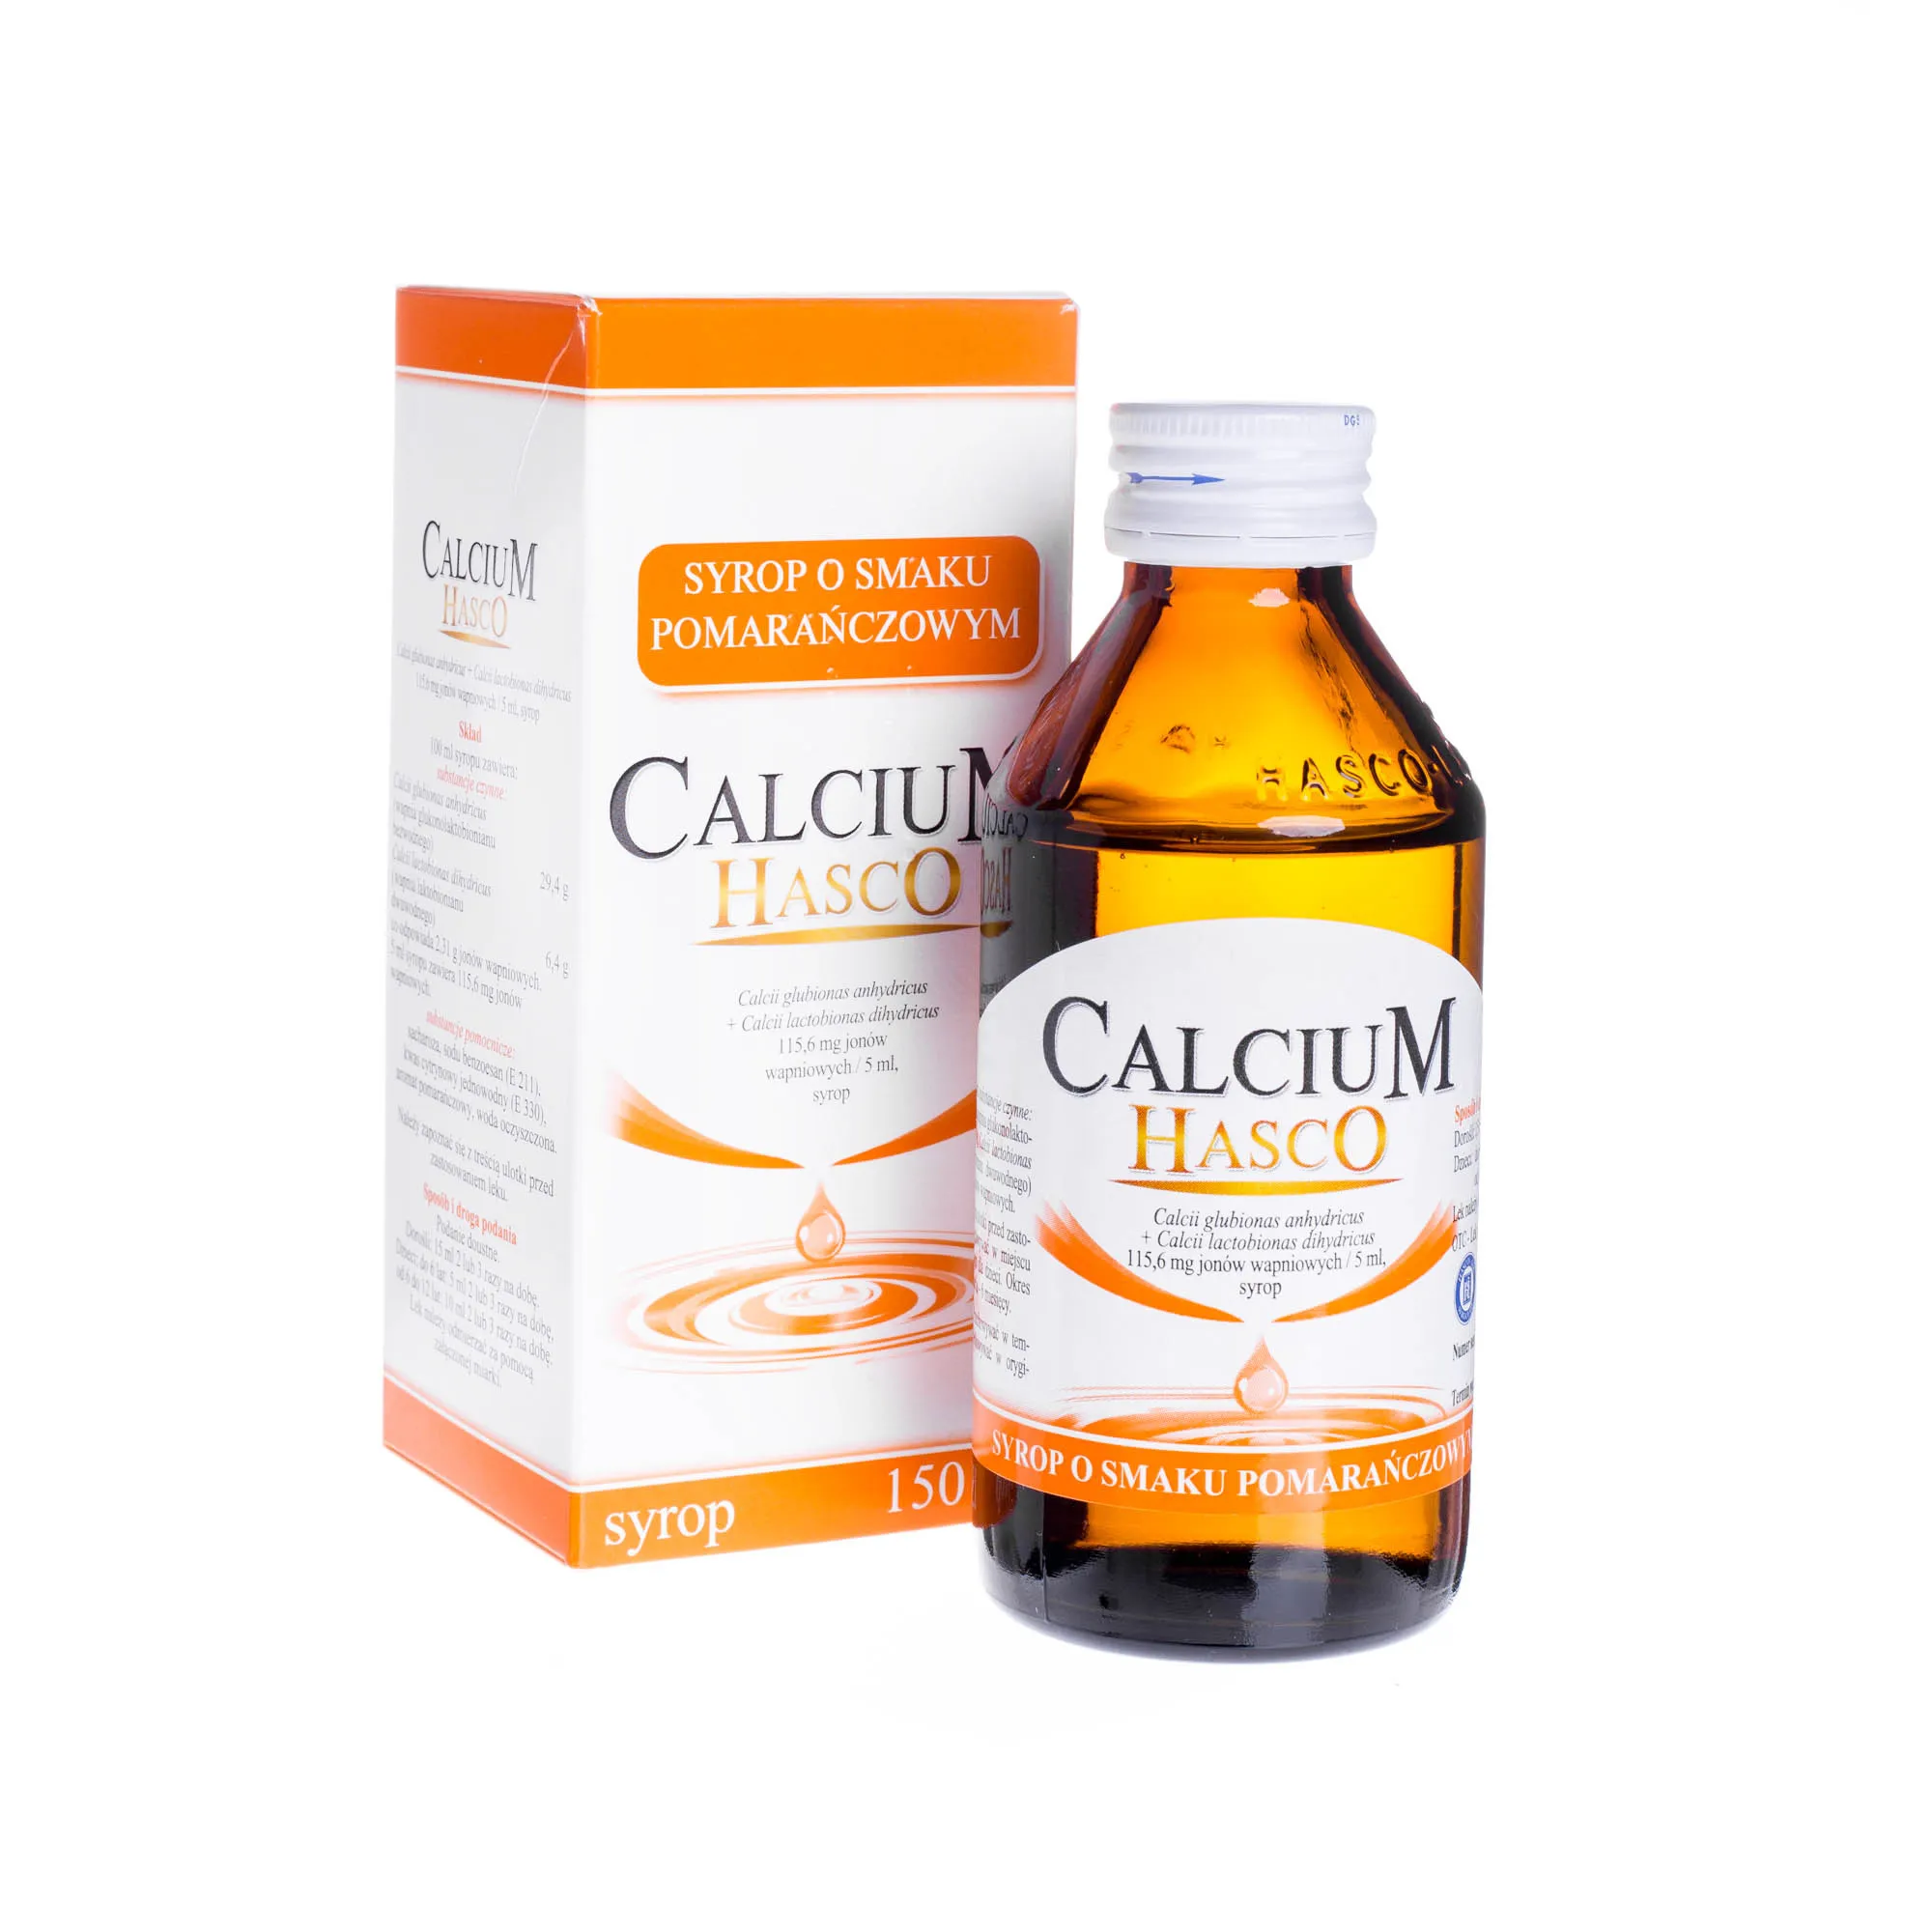 Calcium Hasco syrop o smaku pomarańczowym, 150 ml 